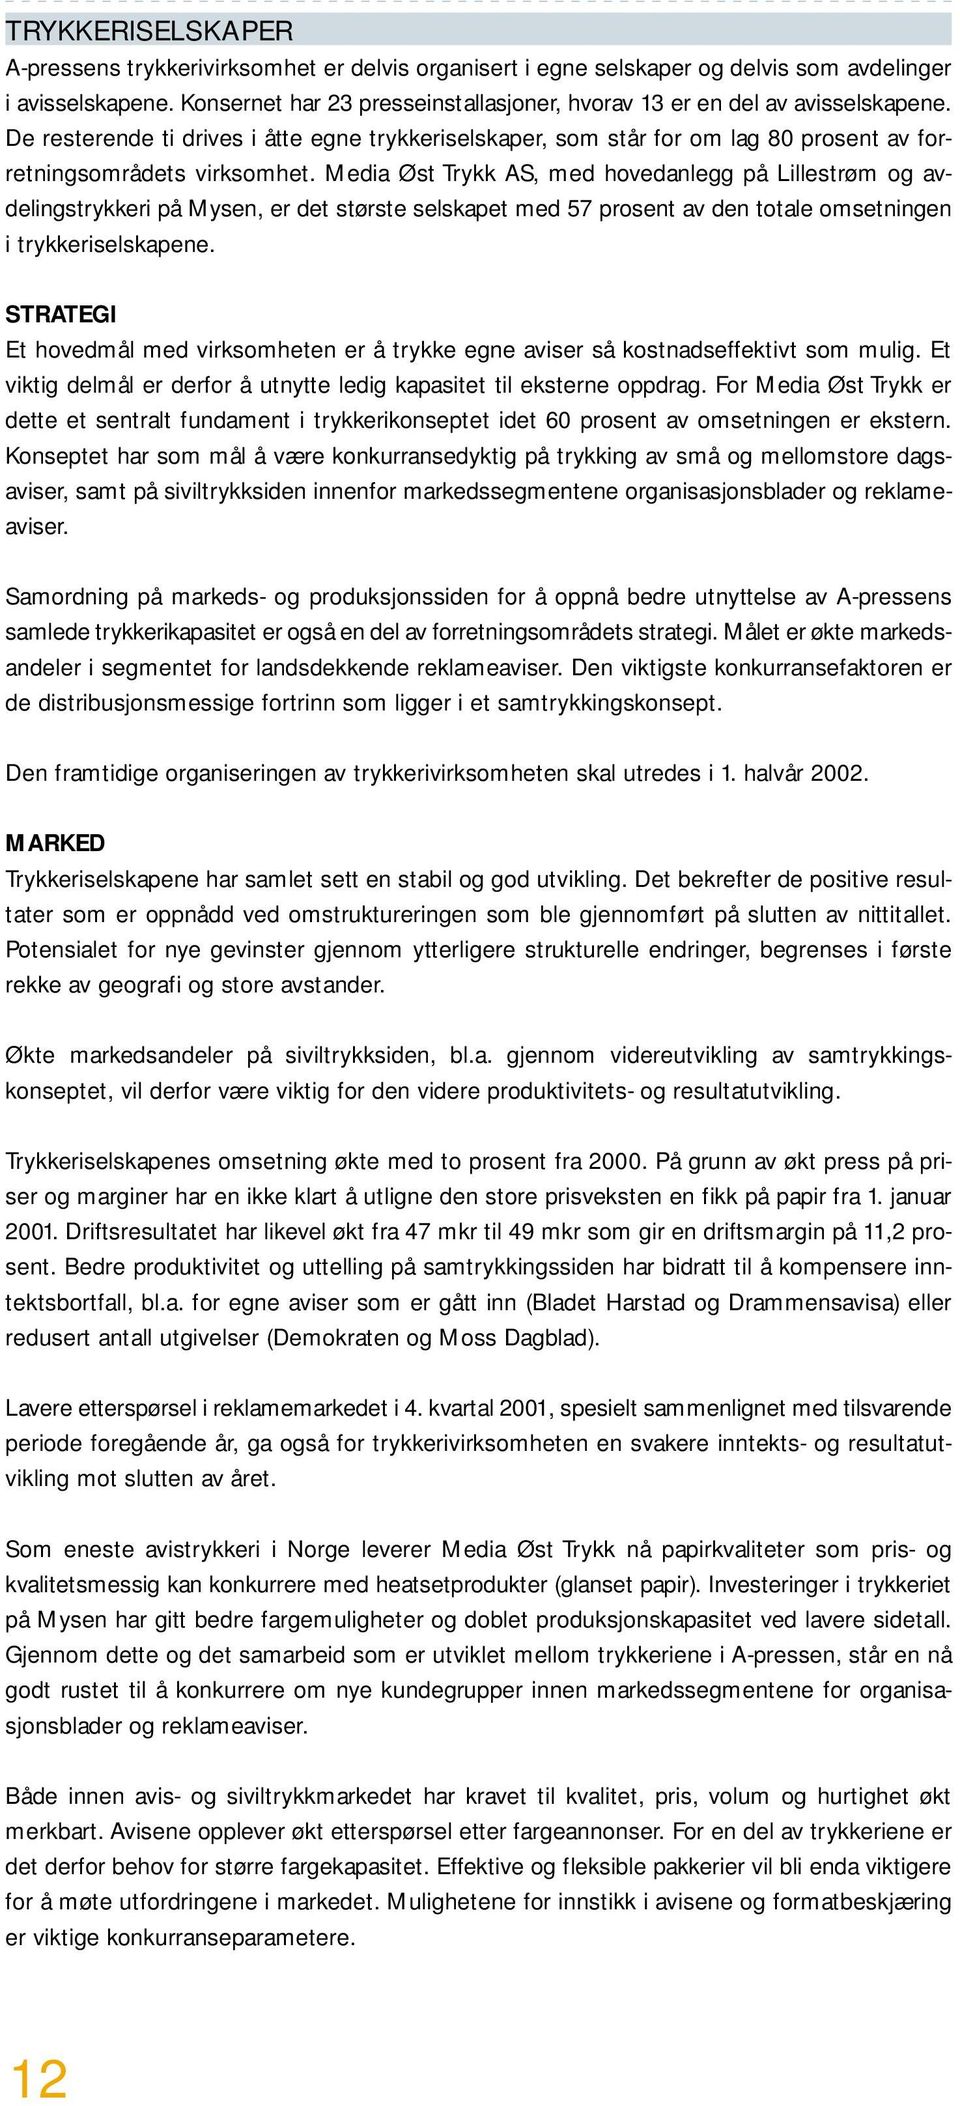 Media Øst Trykk AS, med hovedanlegg på Lillestrøm og avdelingstrykkeri på Mysen, er det største selskapet med 57 prosent av den totale omsetningen i trykkeriselskapene.